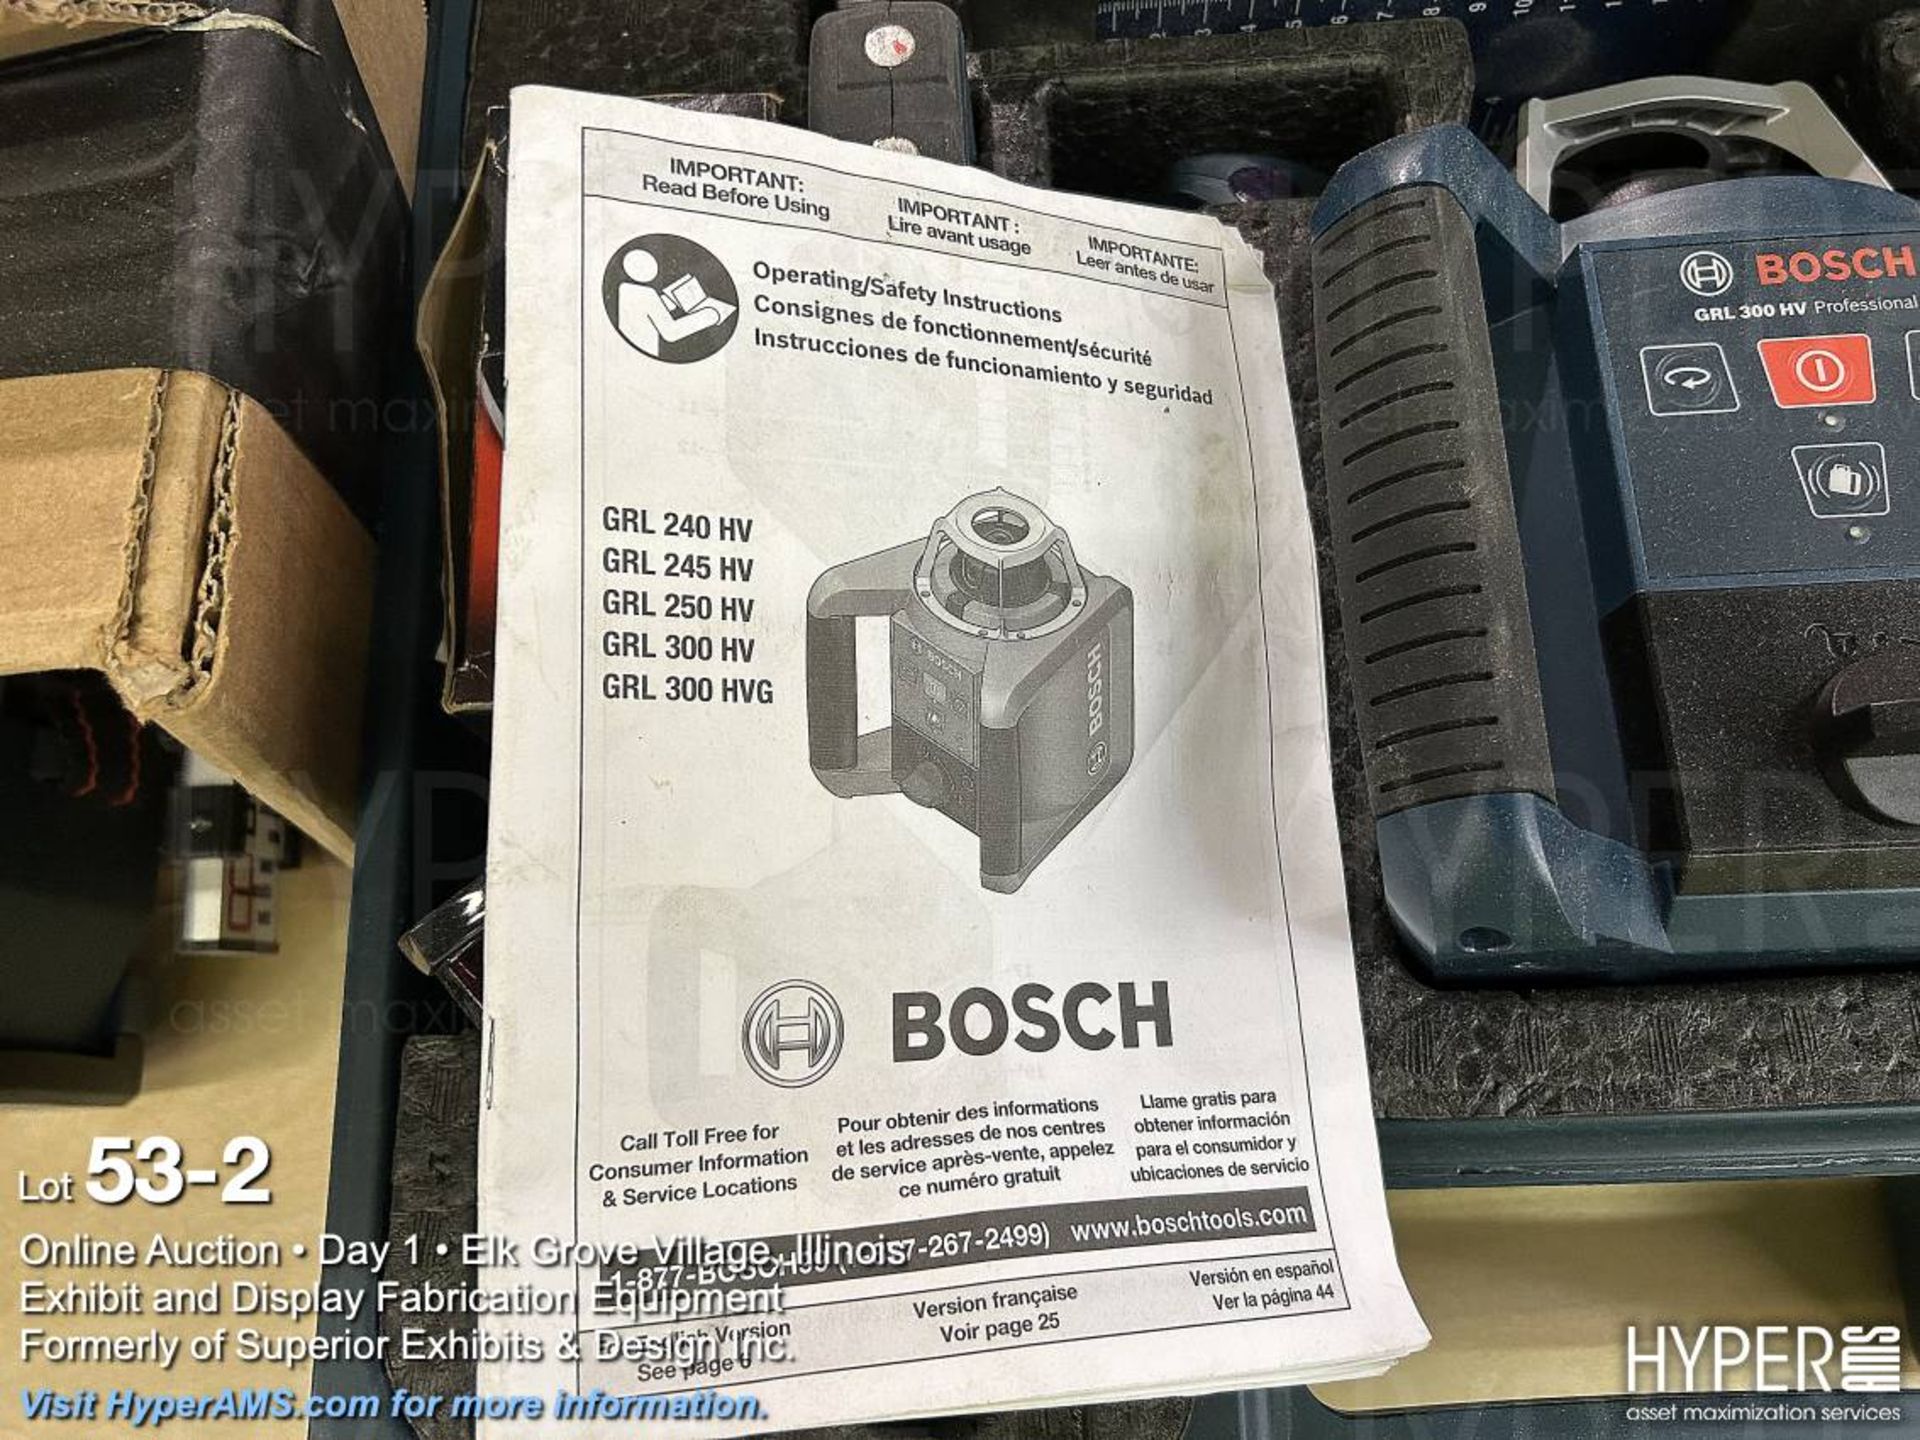 Bosch GRL 300 HV rotational laser - Image 2 of 3